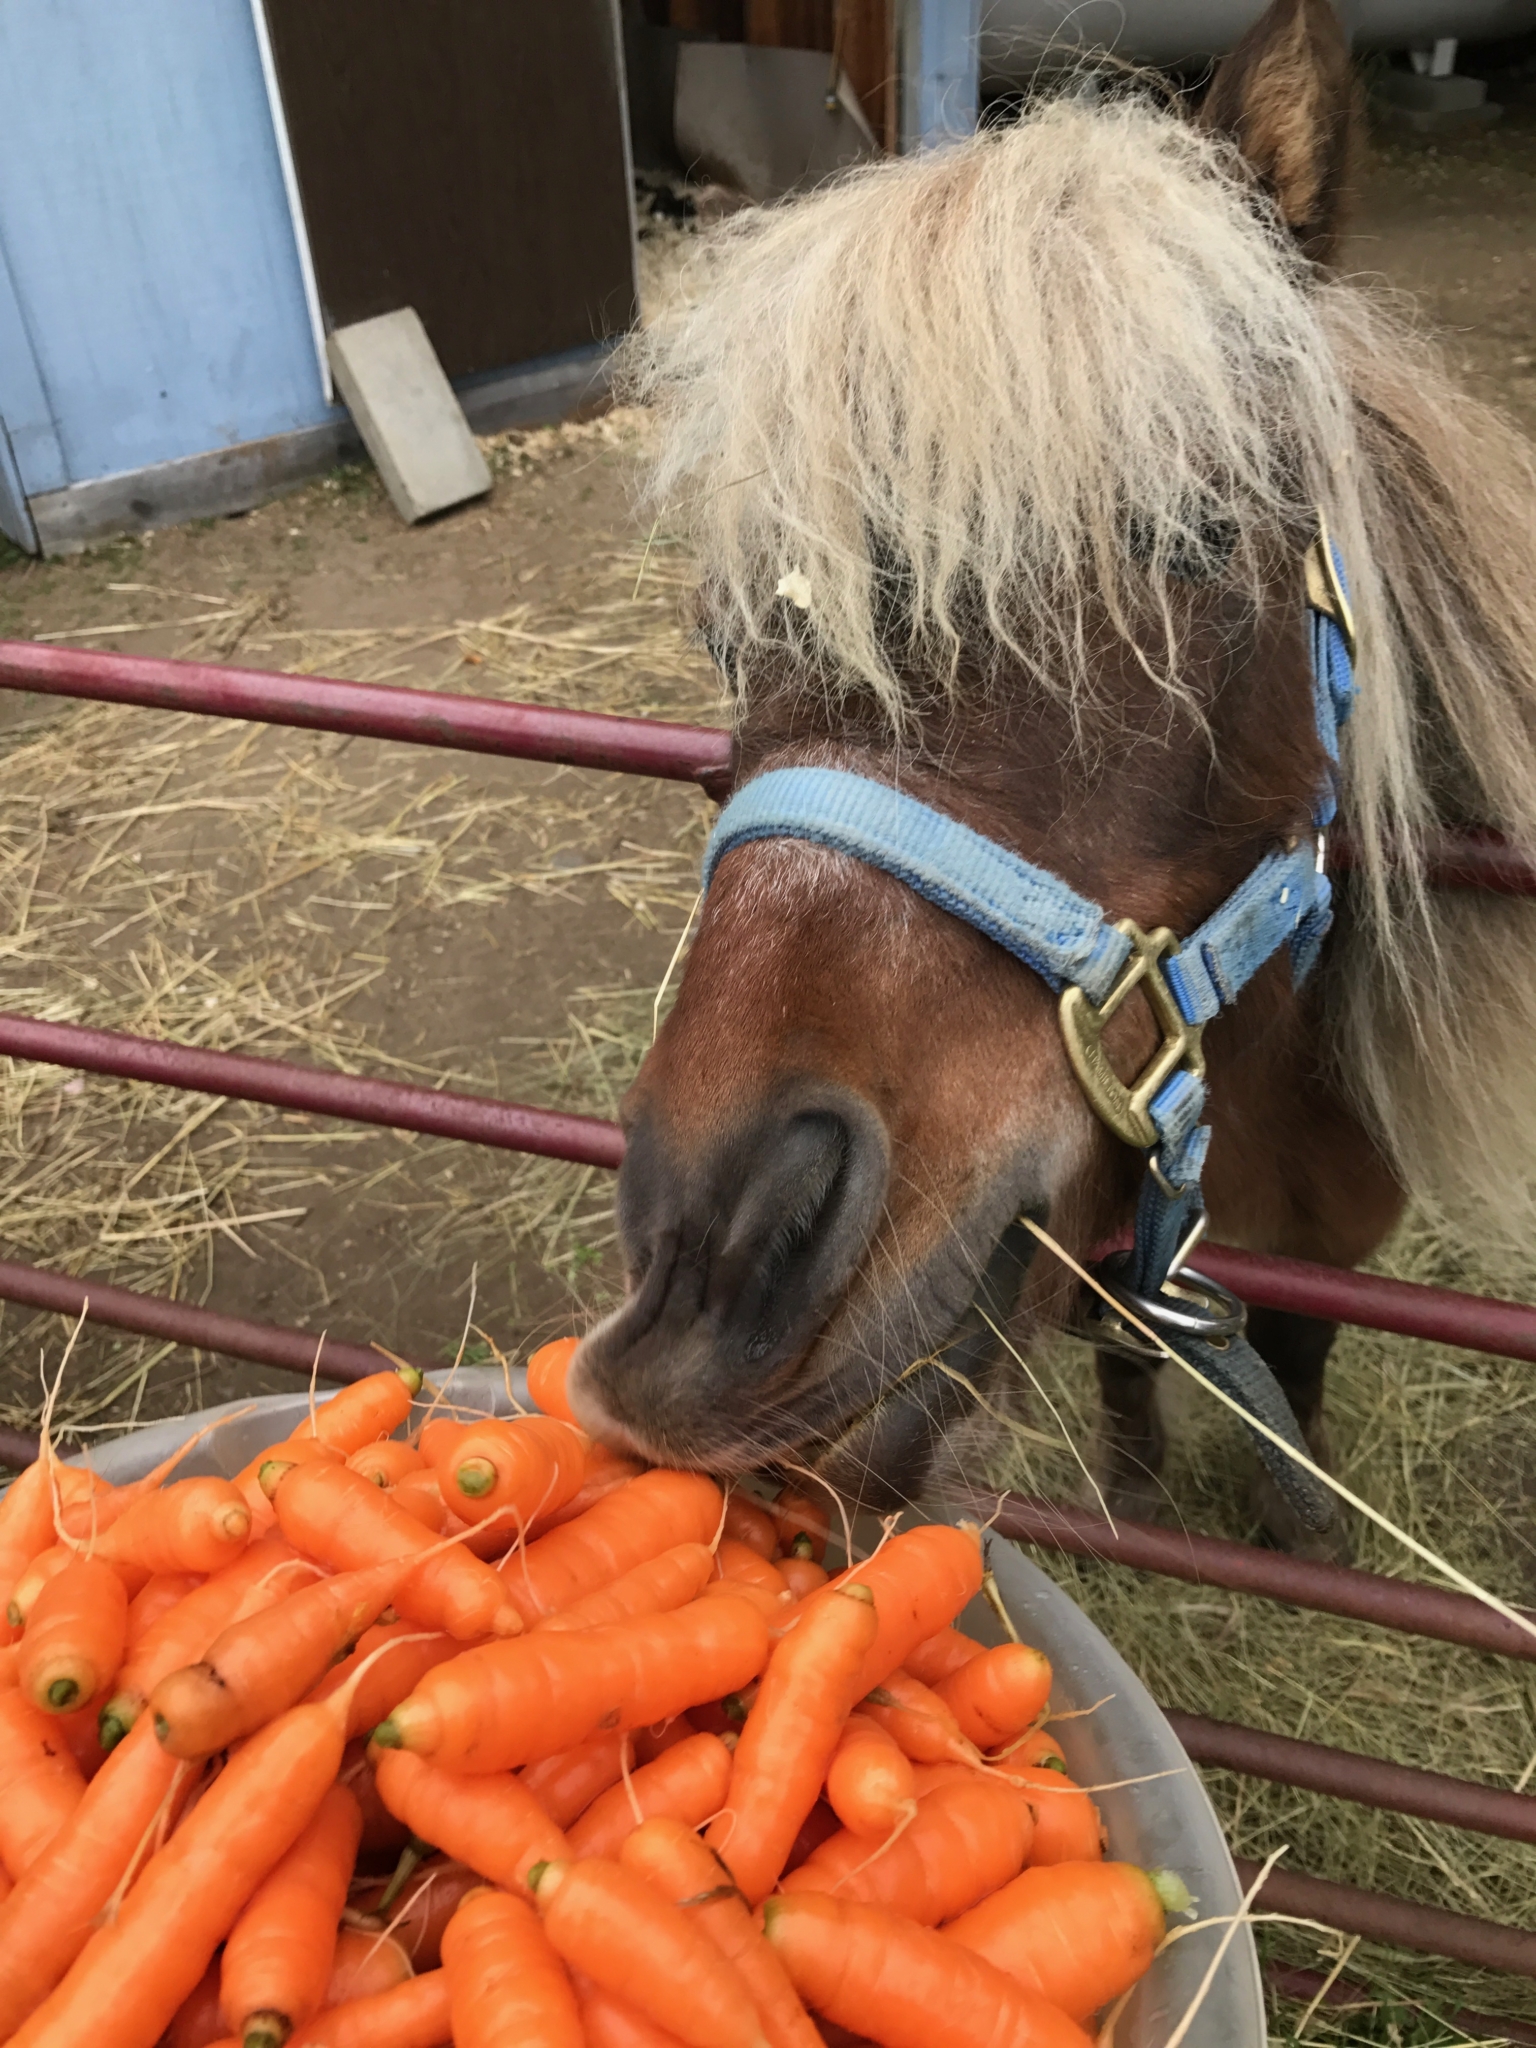 John Elliot's horse eating carrots